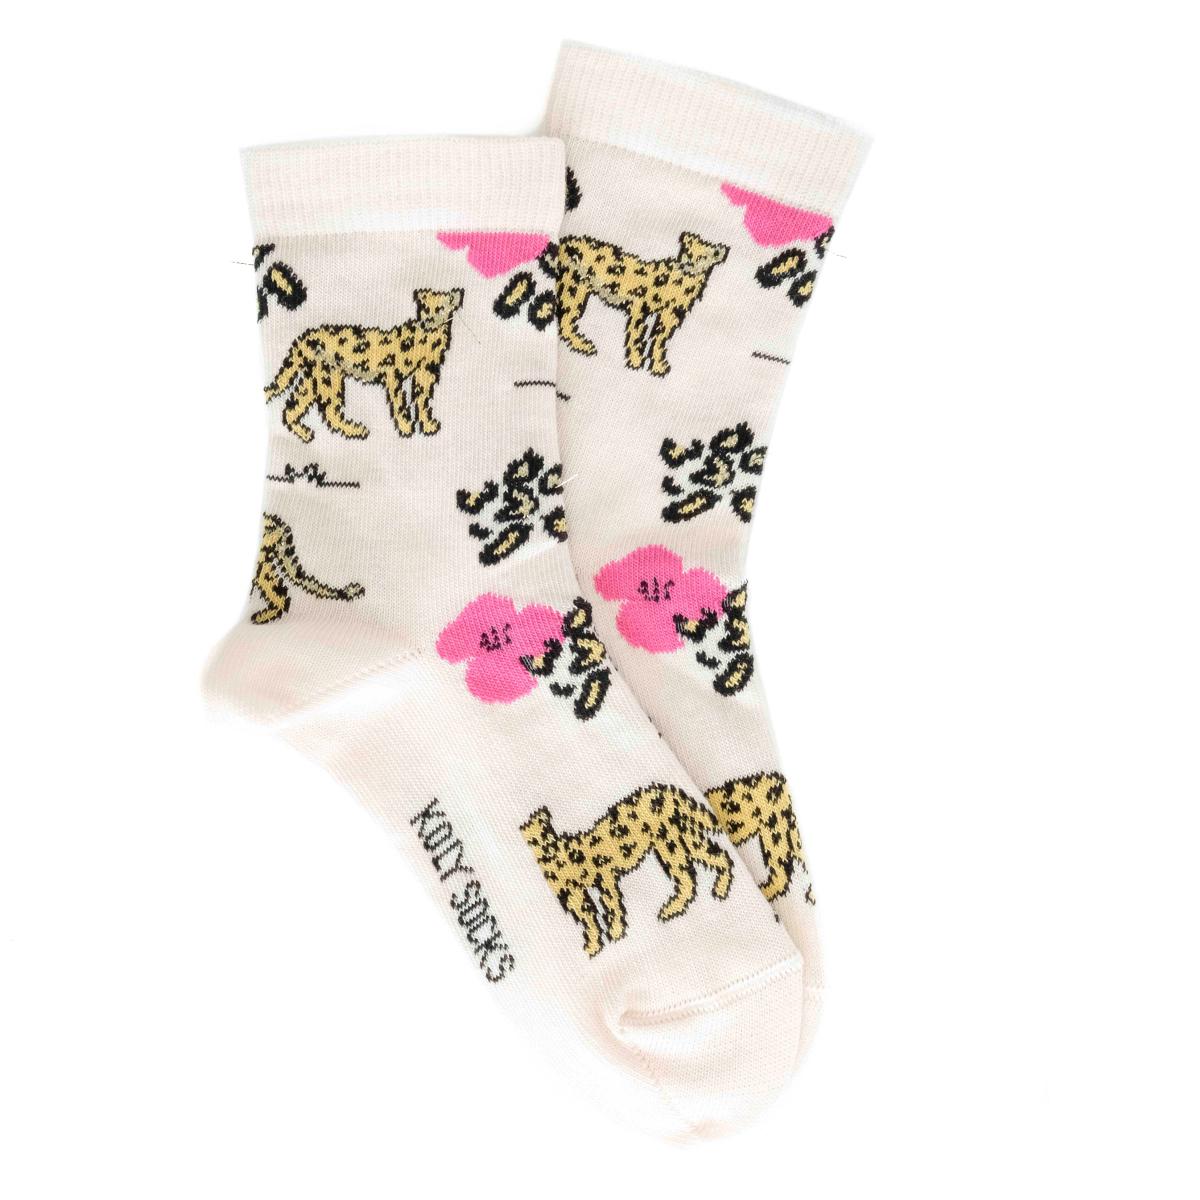 Selected image for KOLY SOCKS Čarape za devojčice Pozlaćeni Leopard roze